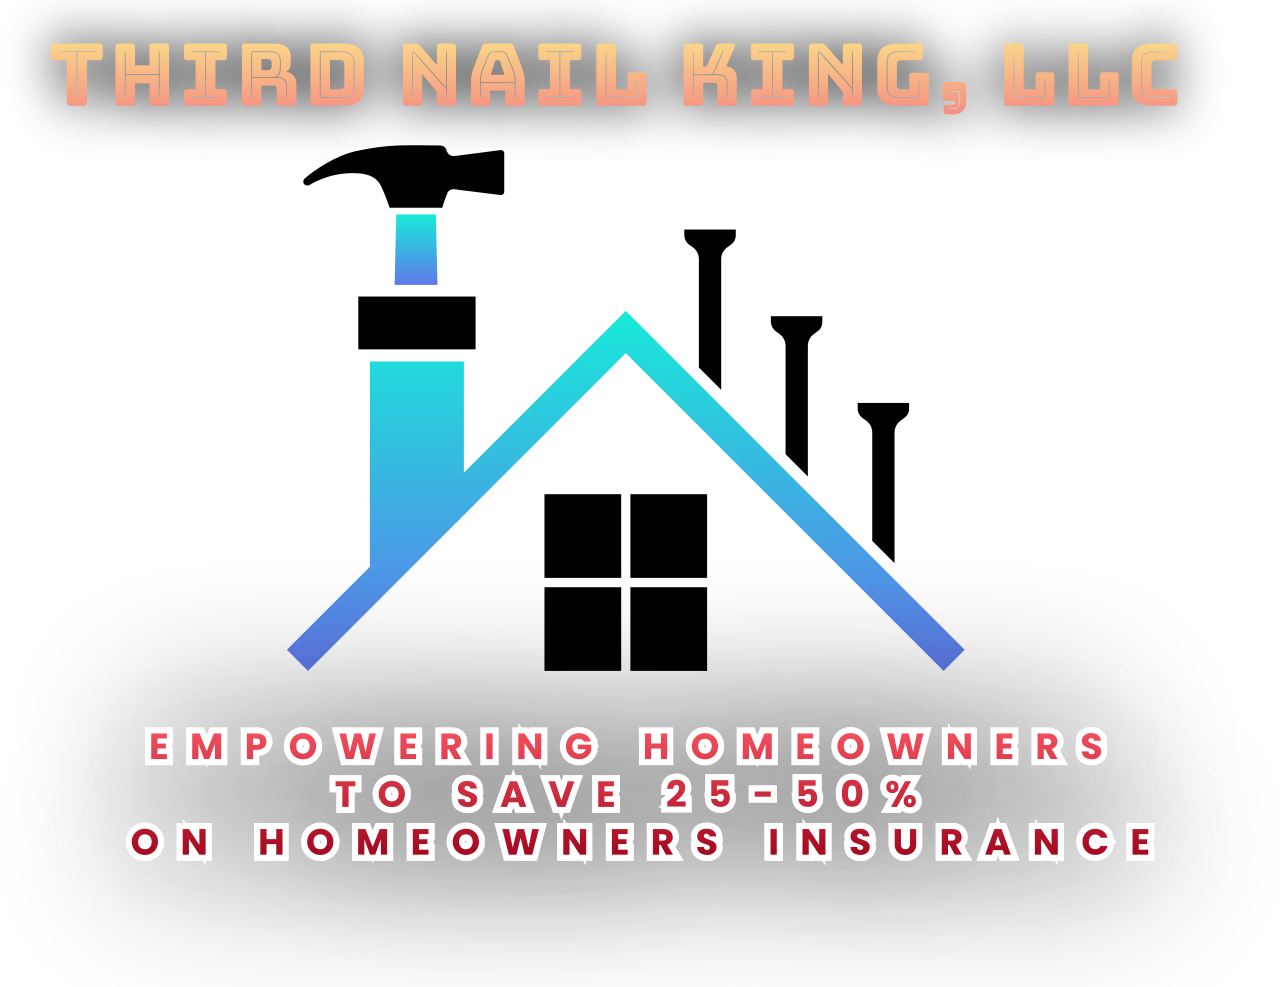 Third Nail King, LLC's web page